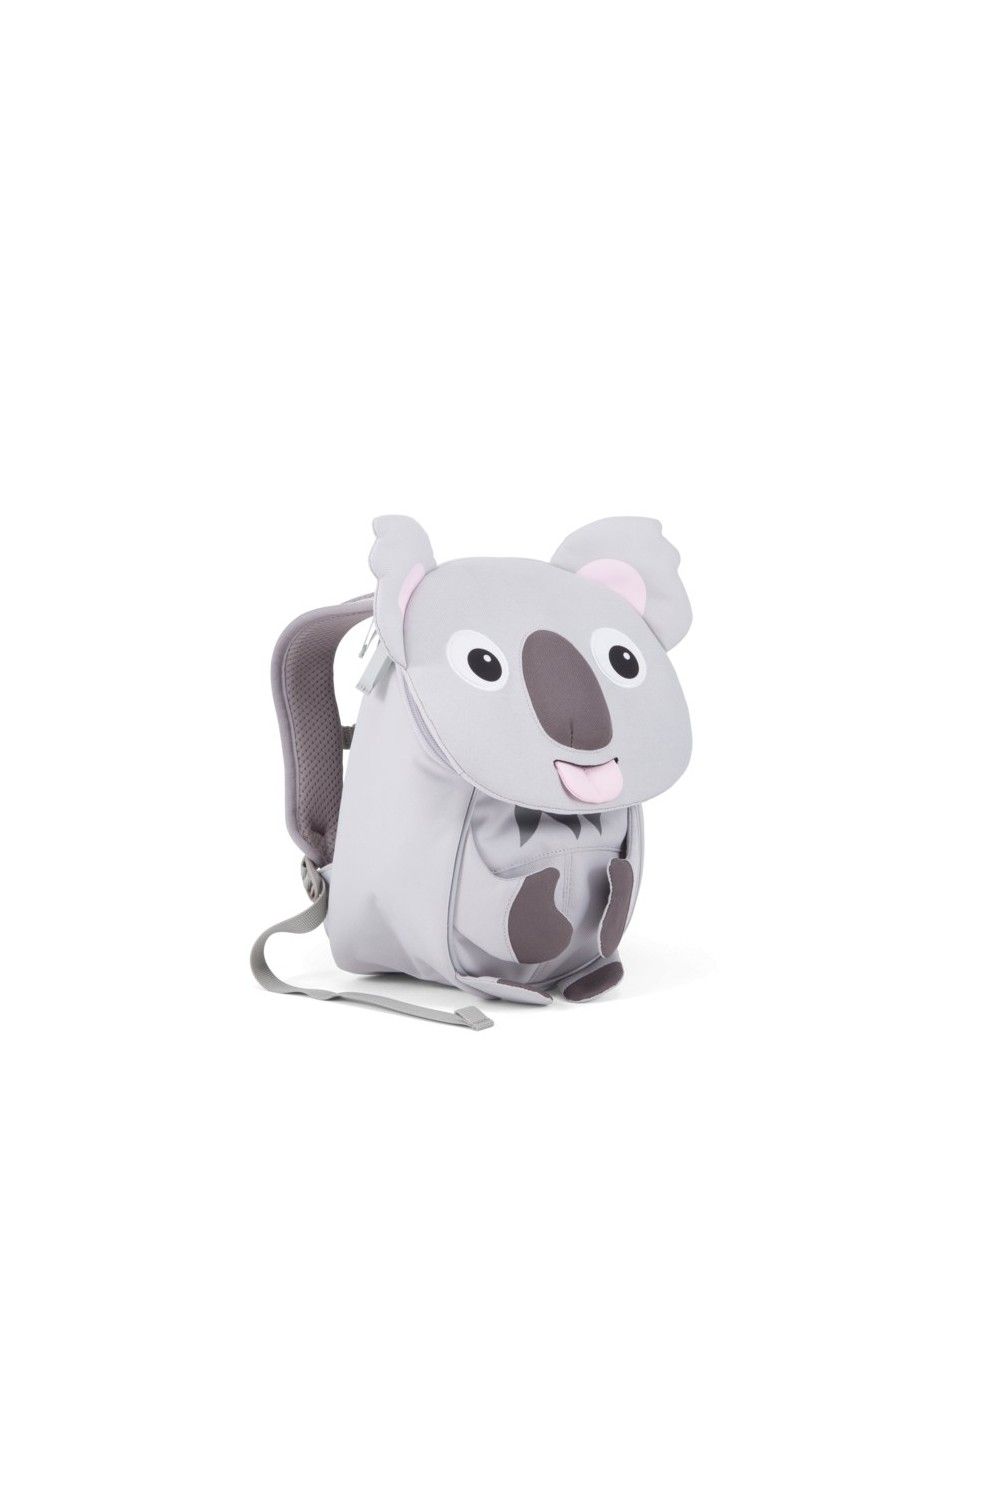 Children backpack Affenzahn little friend Koala